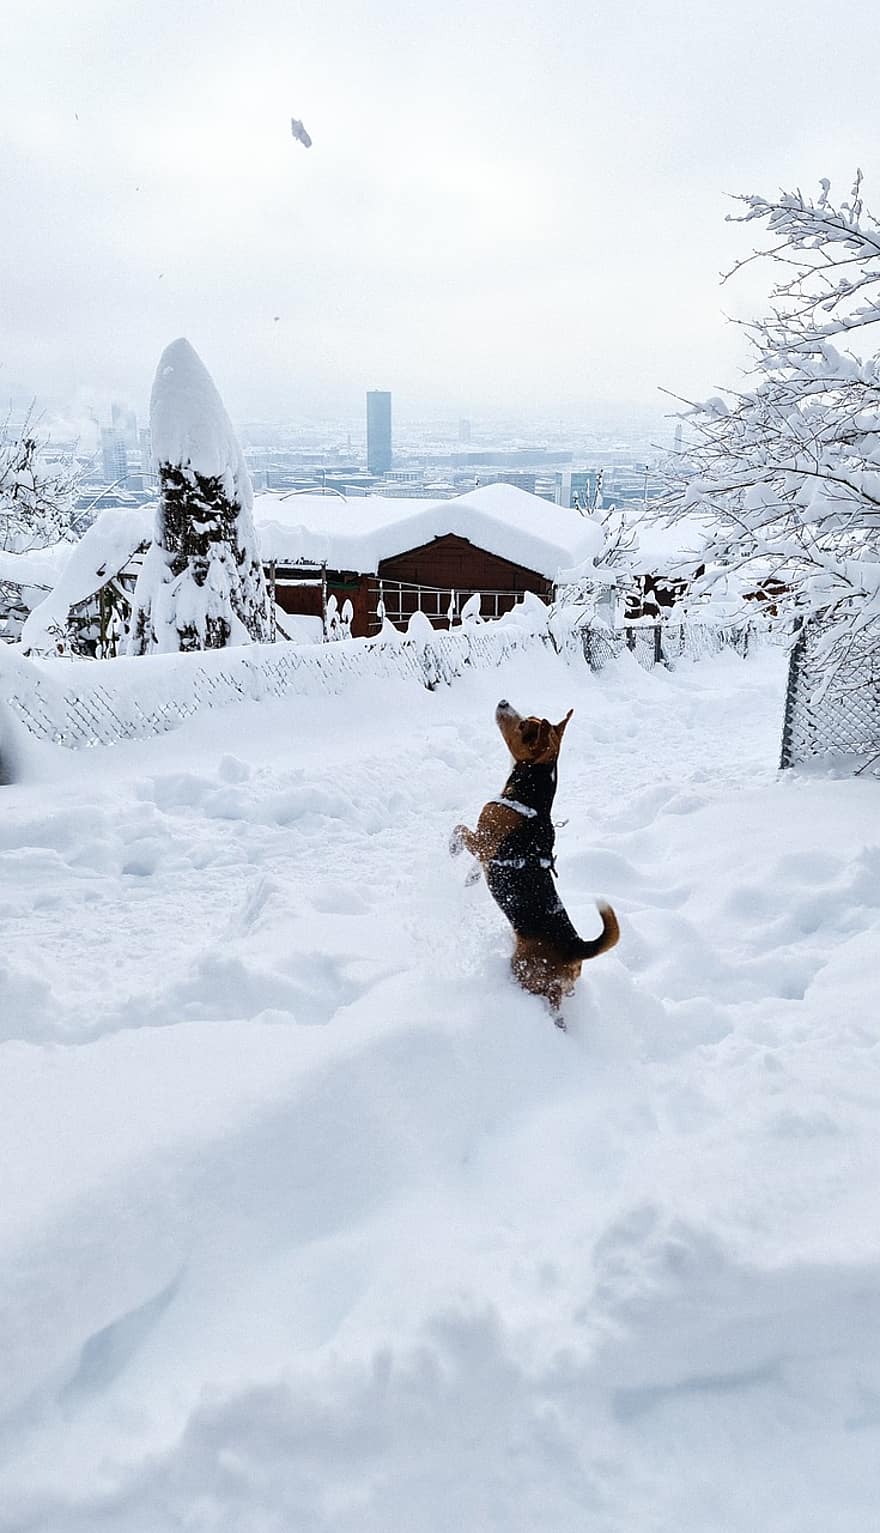 Dog, Snow, Winter, Play, Pet, Playful, Playful Dog, Snowy, Wintry, Hoarfrost, Frosty